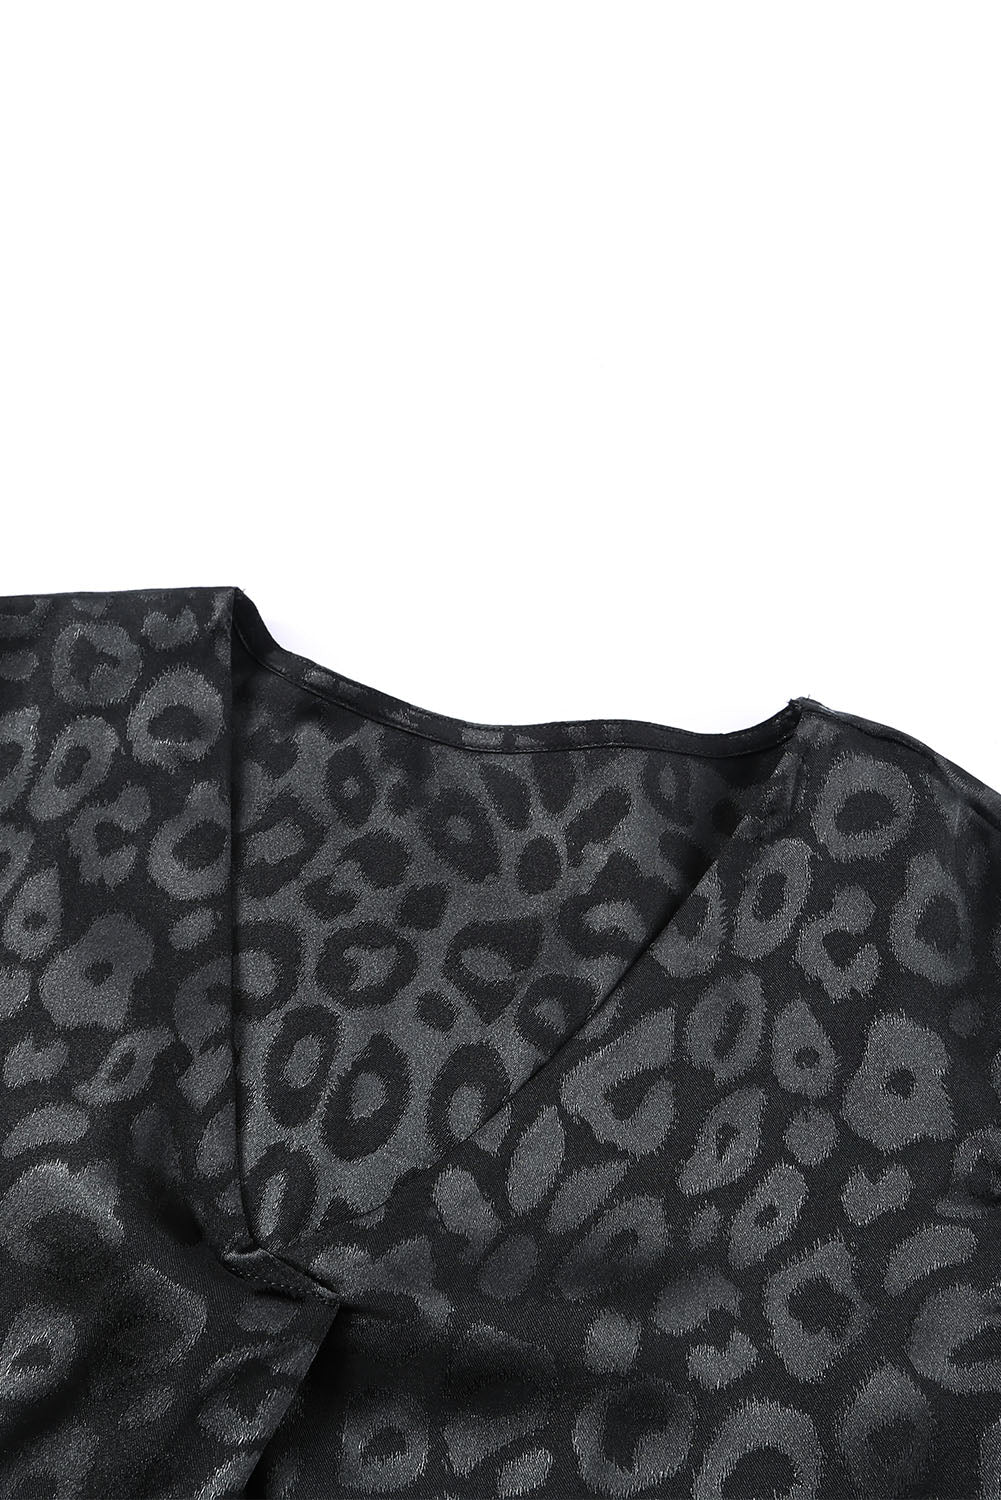 Camicetta nera con motivo leopardato con scollo a V